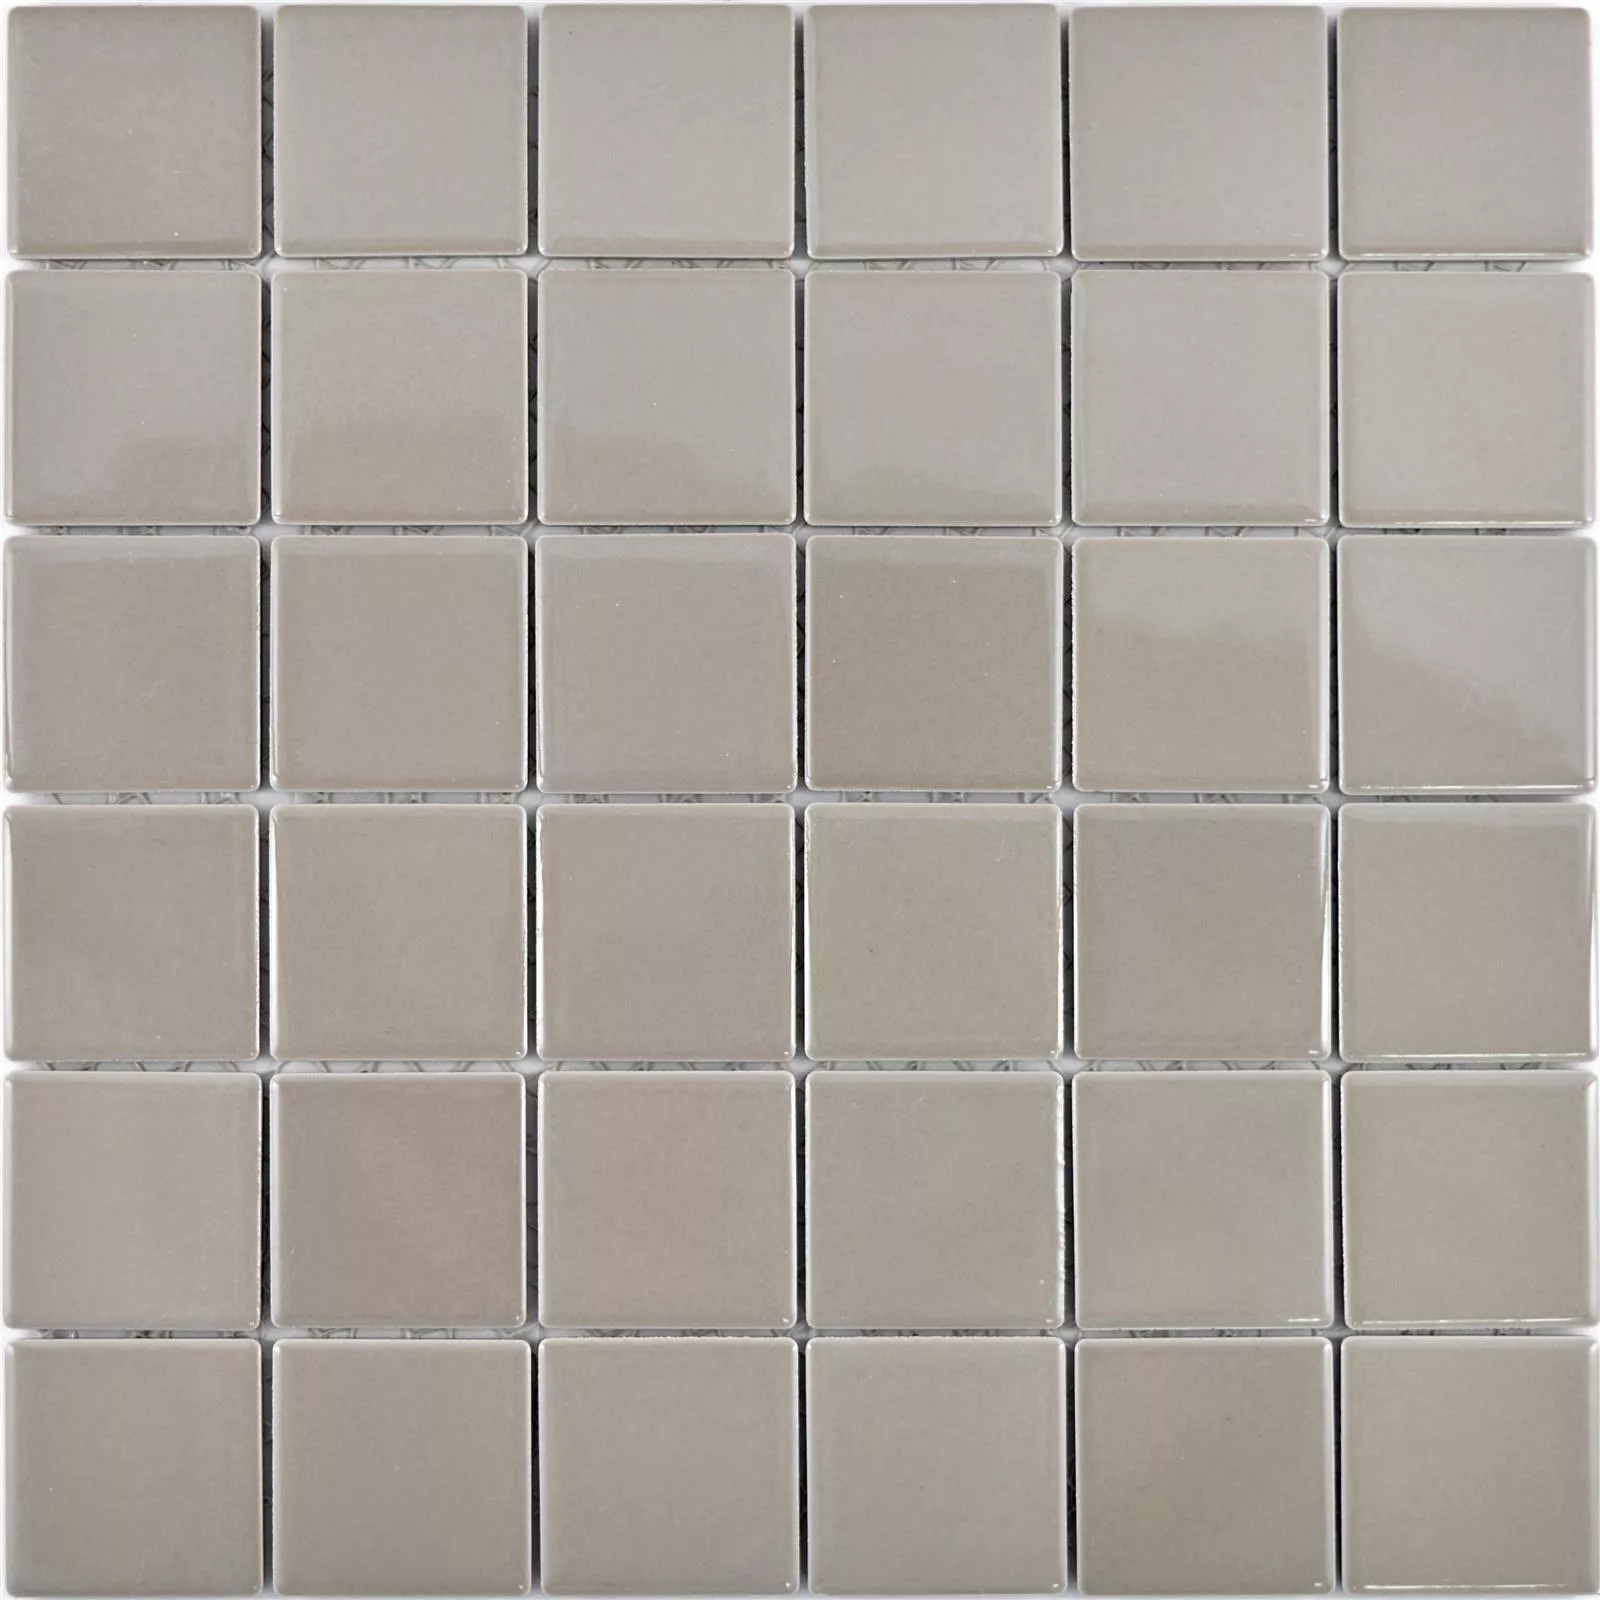 Ceramic Mosaic Tiles Adrian Mud Mat Square 48